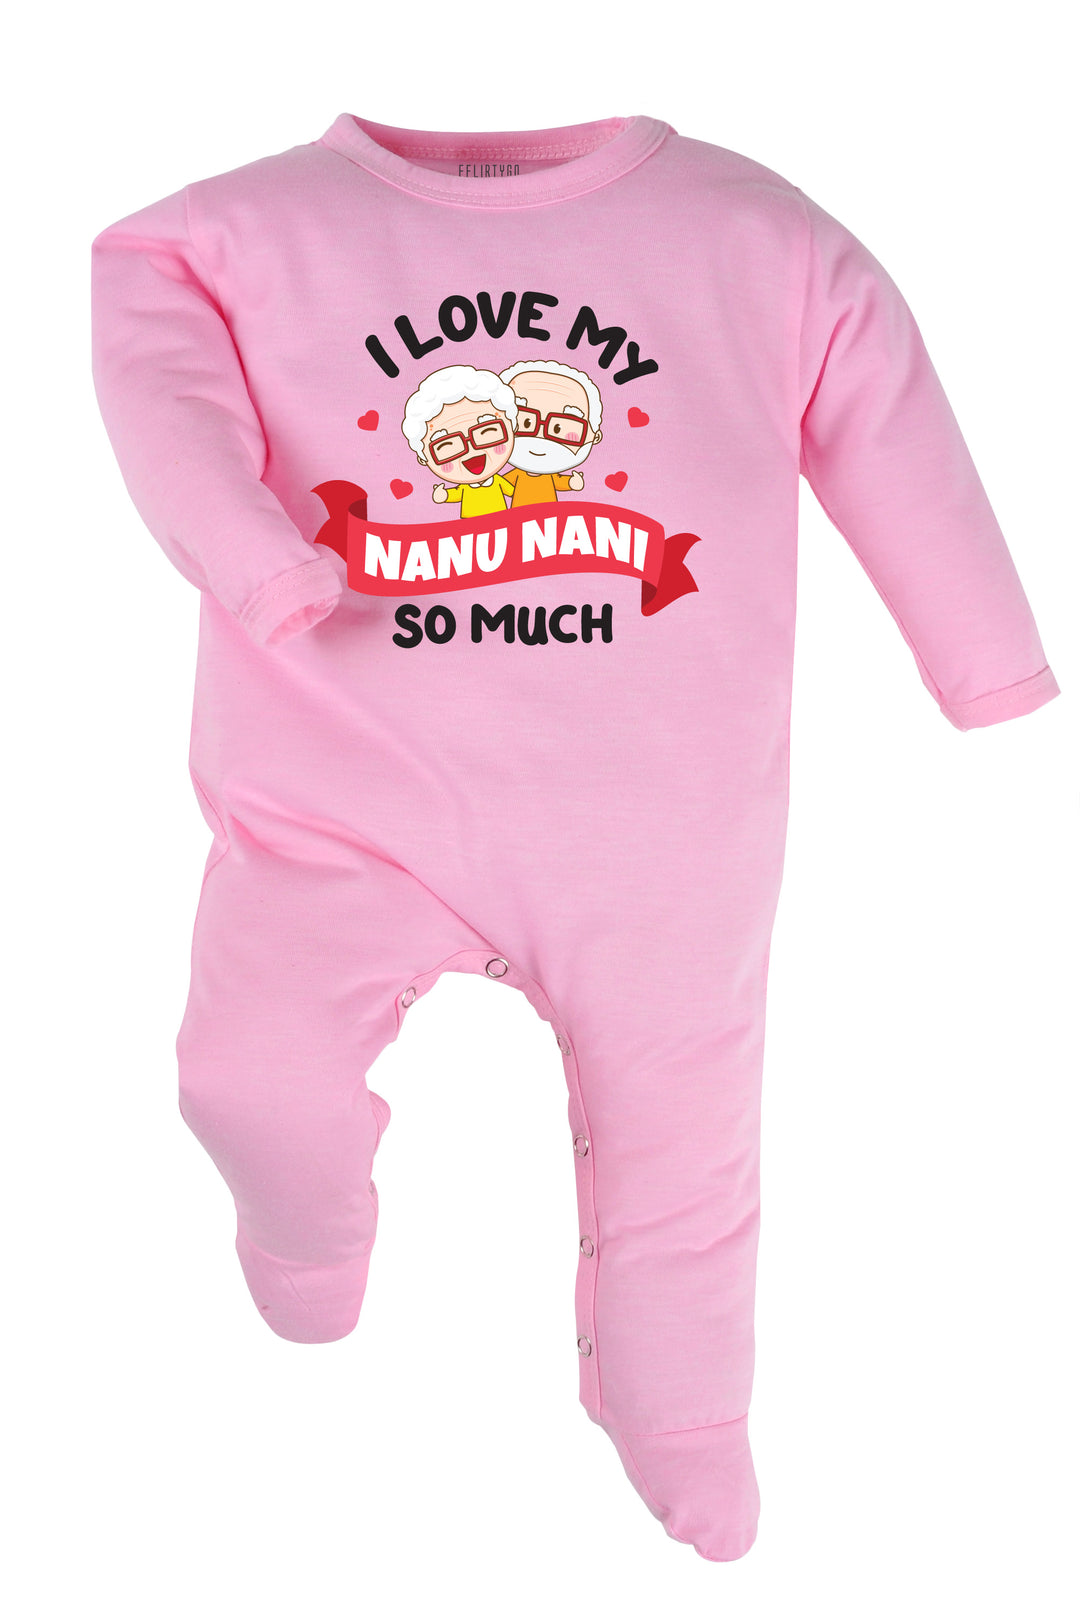 I Love My Nanu Nani So Much Baby Romper | Onesies